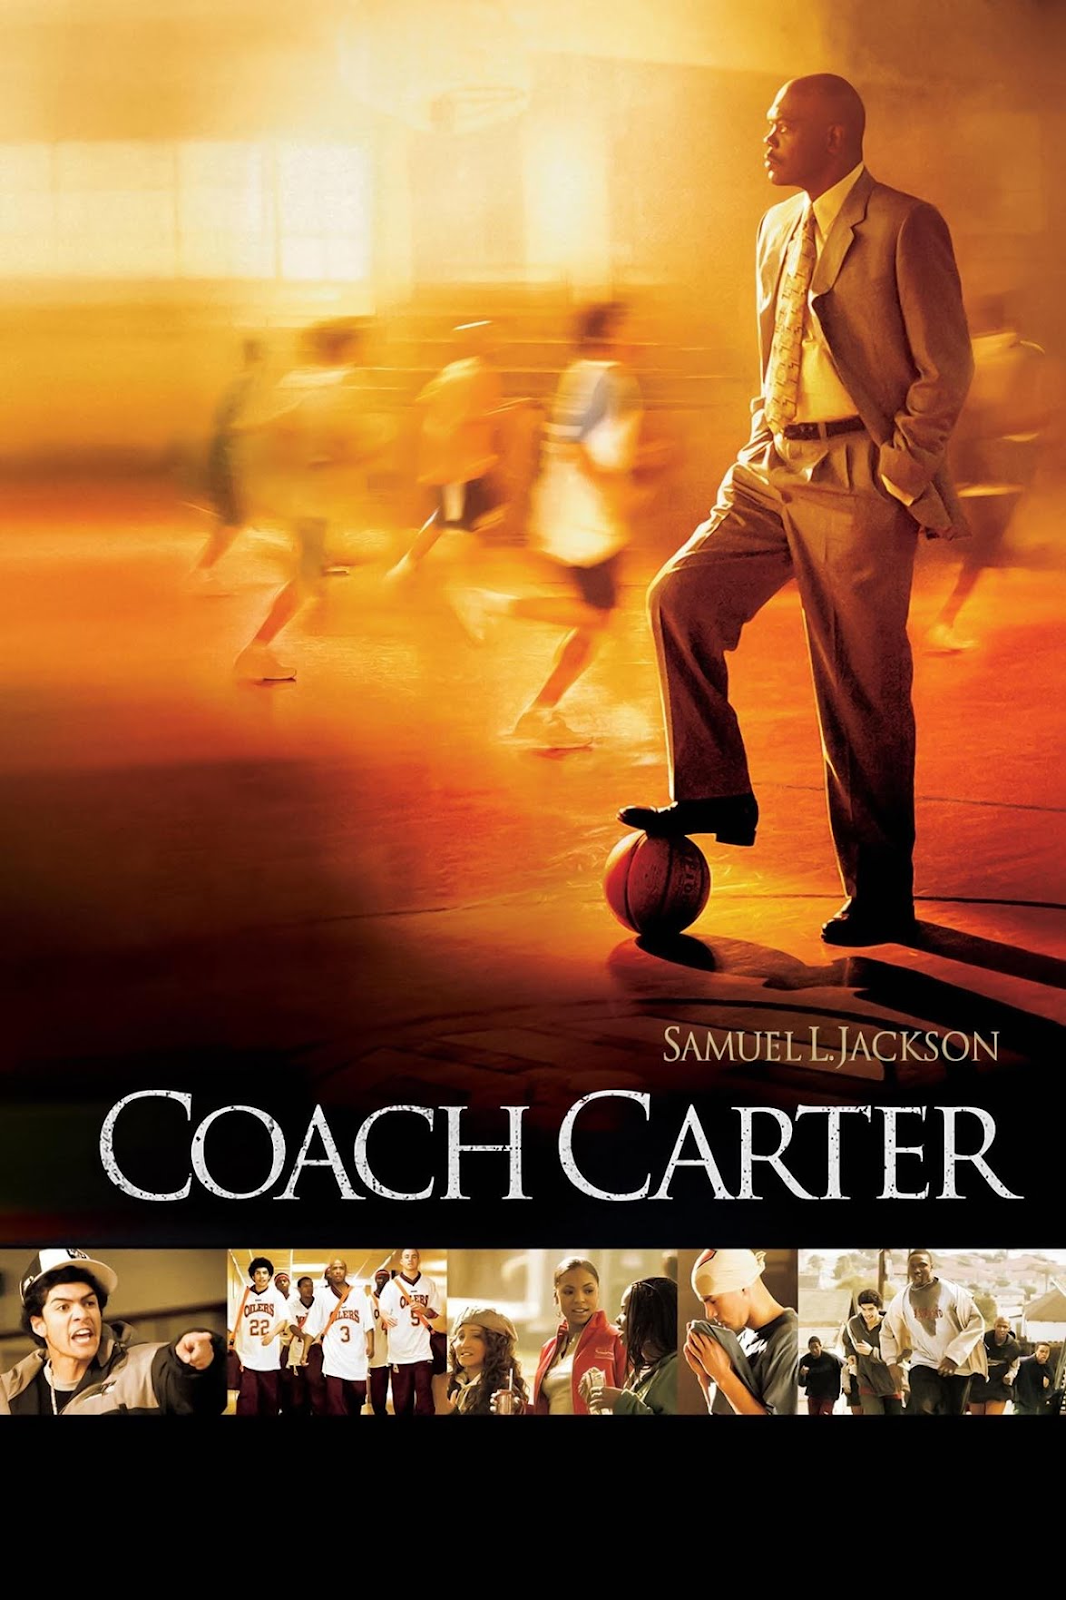 Coach Carter Best Inspirational Movies